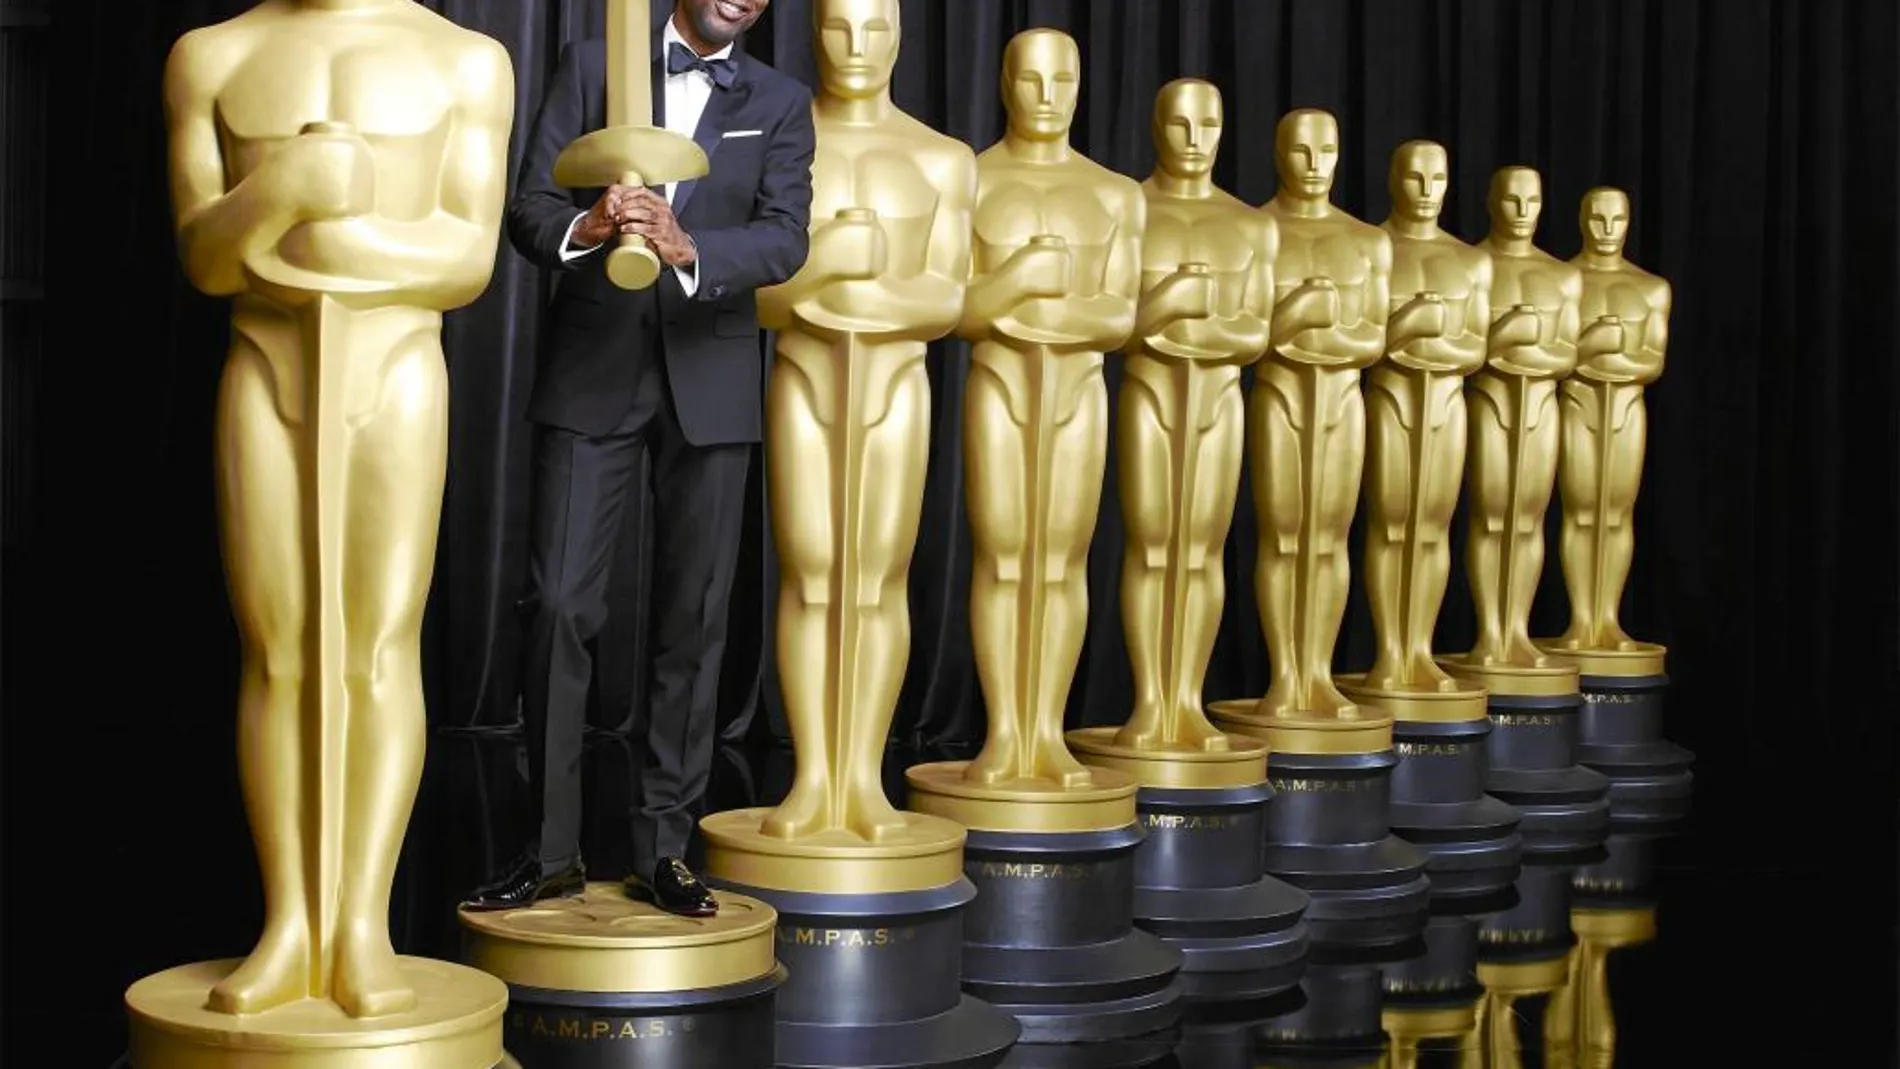 Chris Rock vuelve a presentar la ceremonia de los Oscar, que condujo ya en 2005